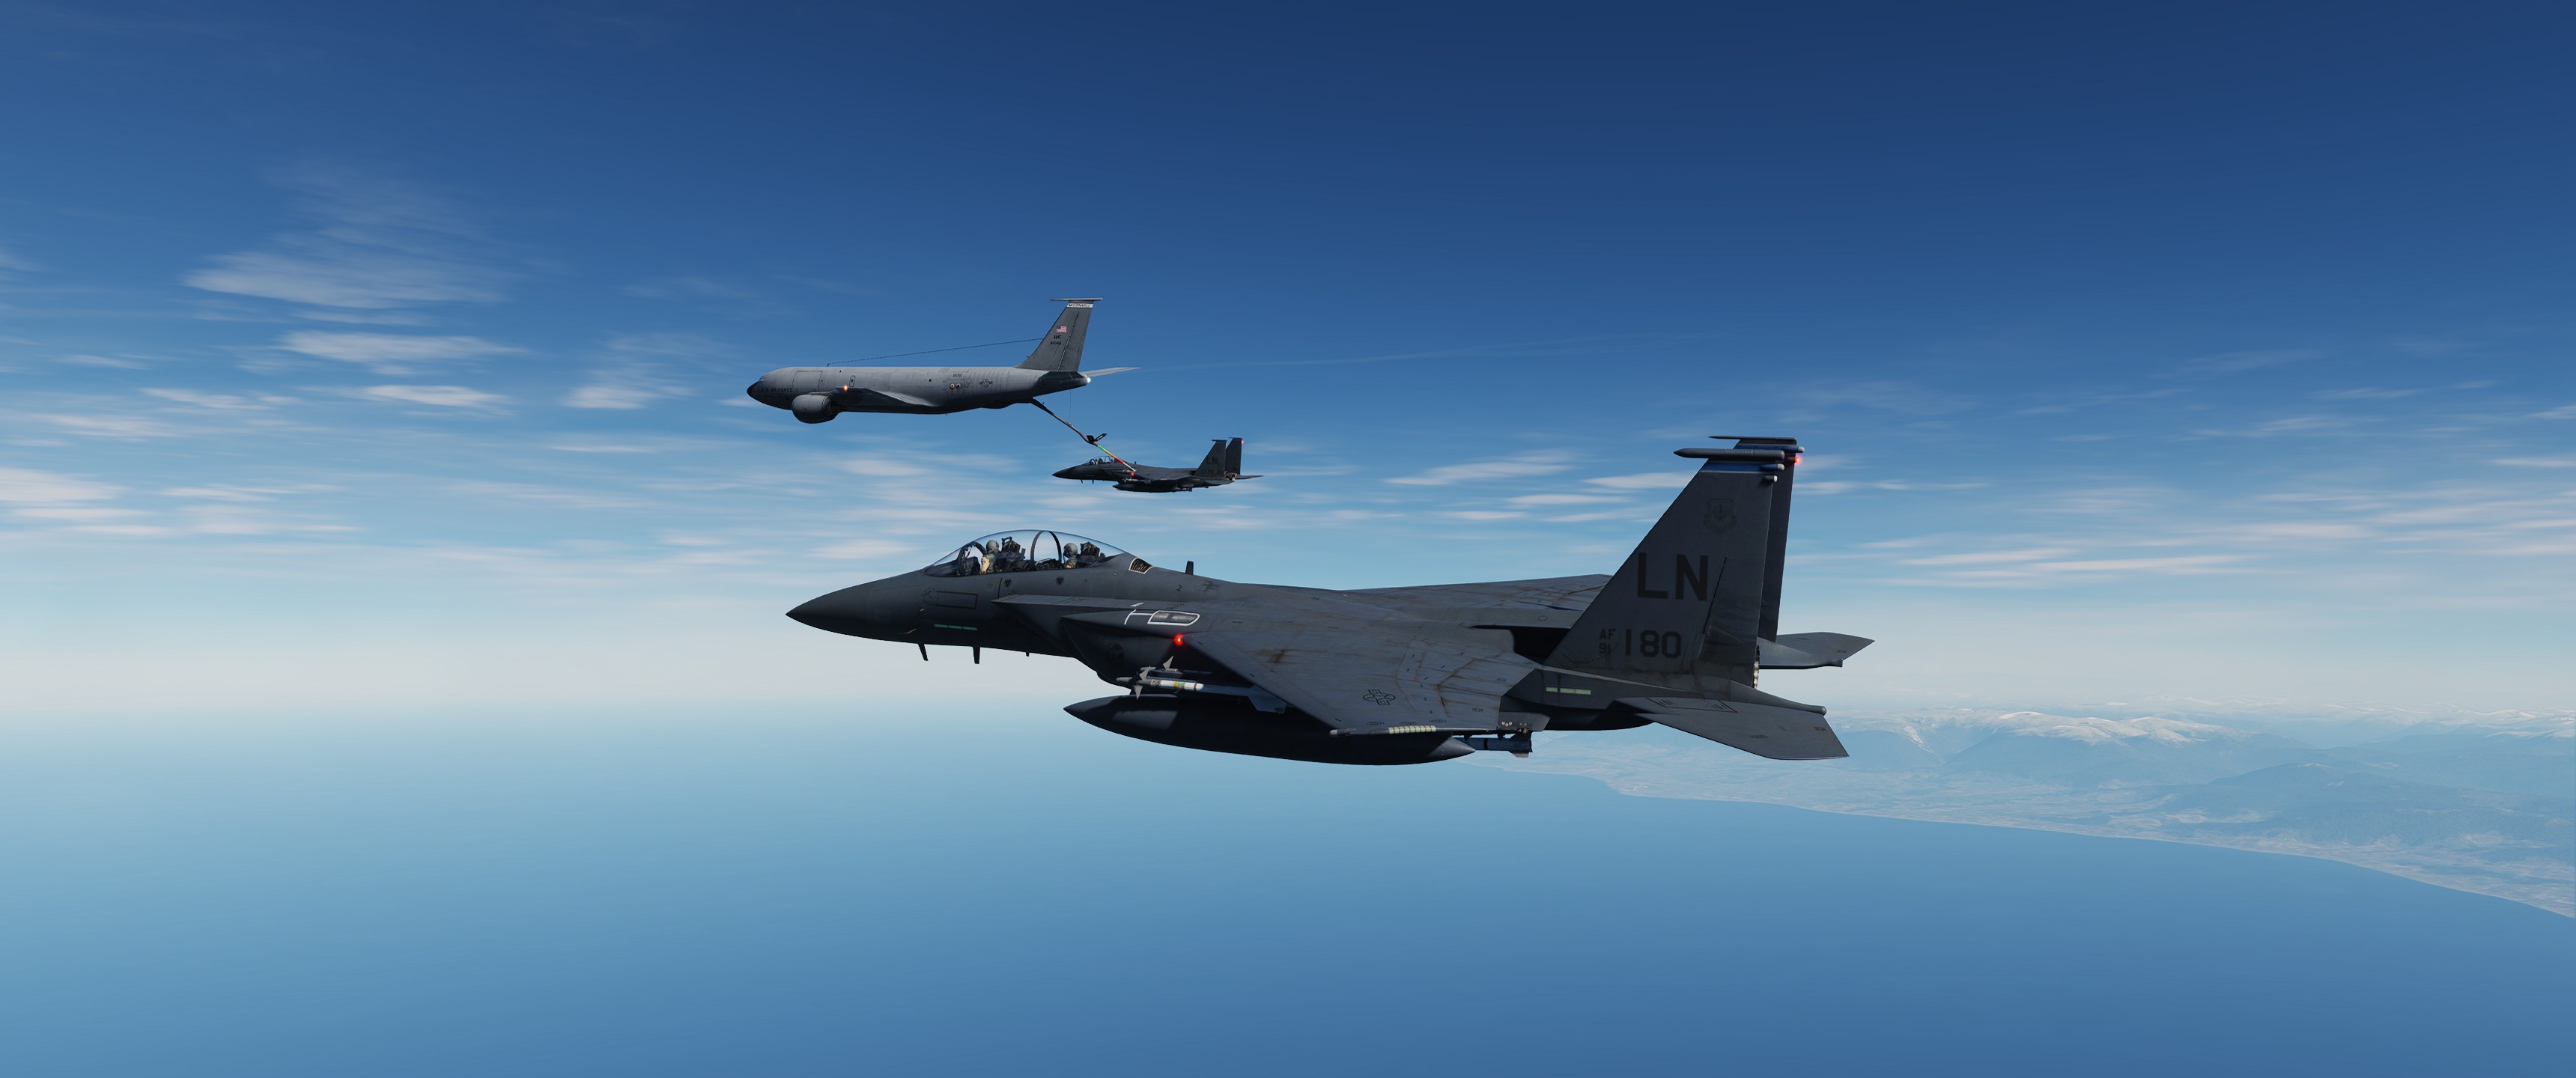 DCS F-15E - Aerial Refueling